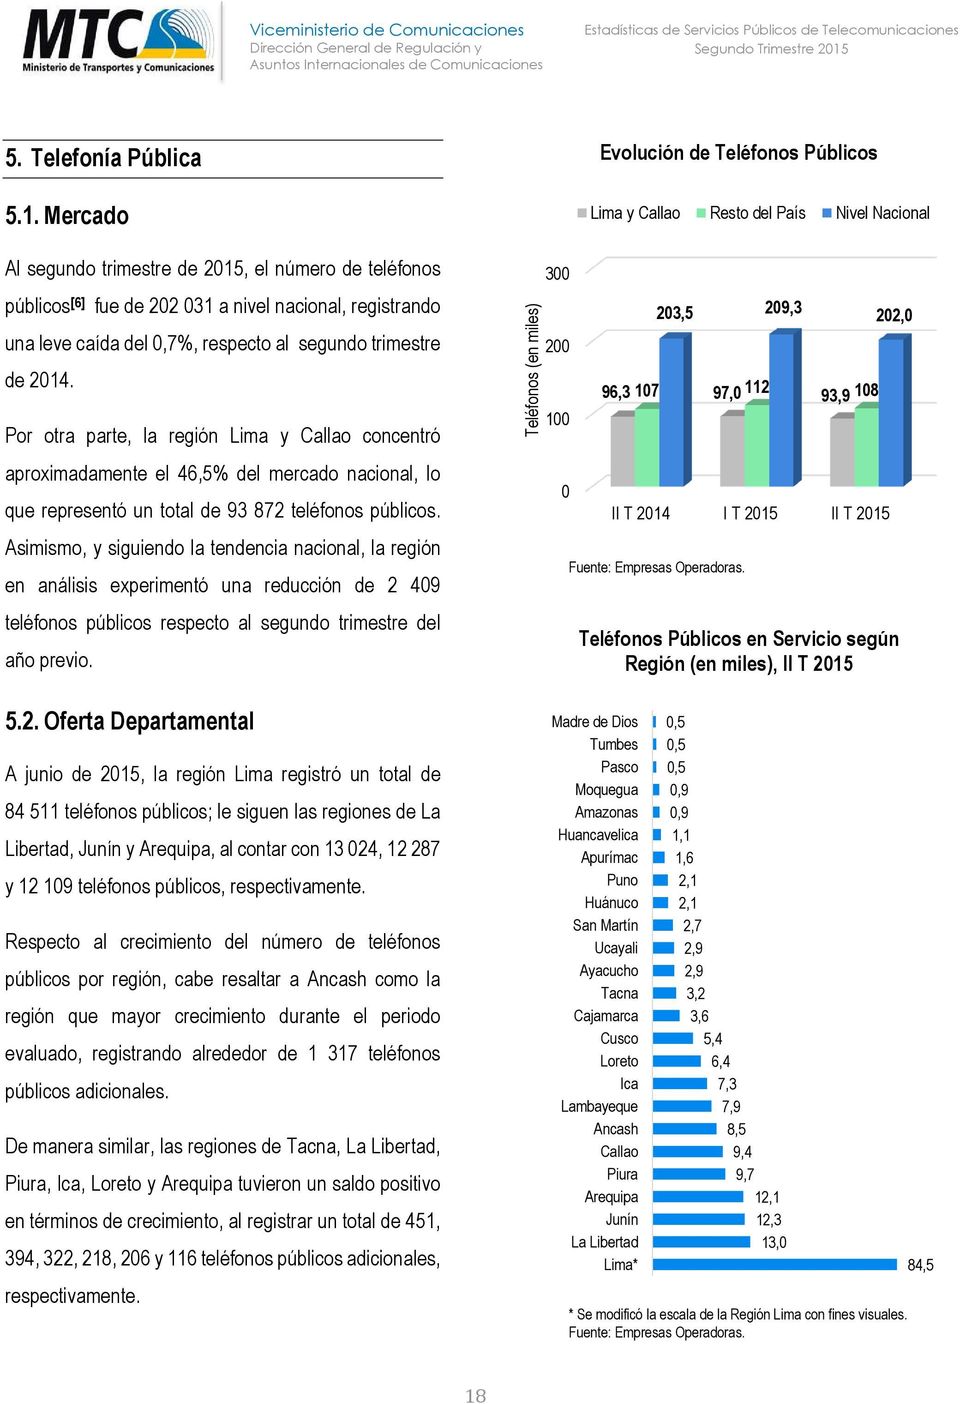 Por otra parte, la región Lima y Callao concentró aproximadamente el 46,5% del mercado nacional, lo que representó un total de 93 872 teléfonos públicos.